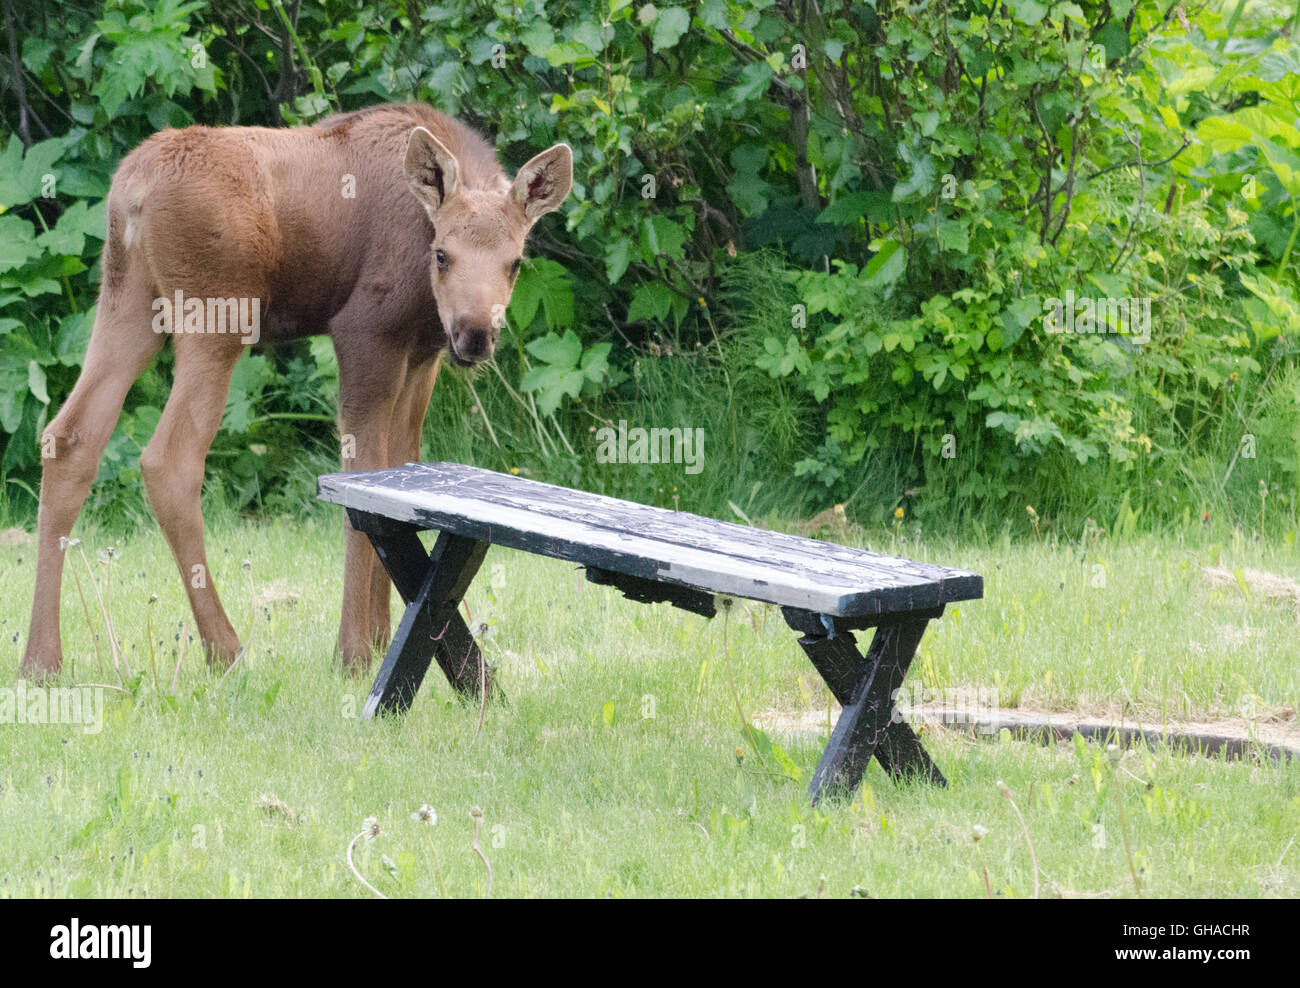 Moose ternero desprotege un banco de picnic Foto de stock